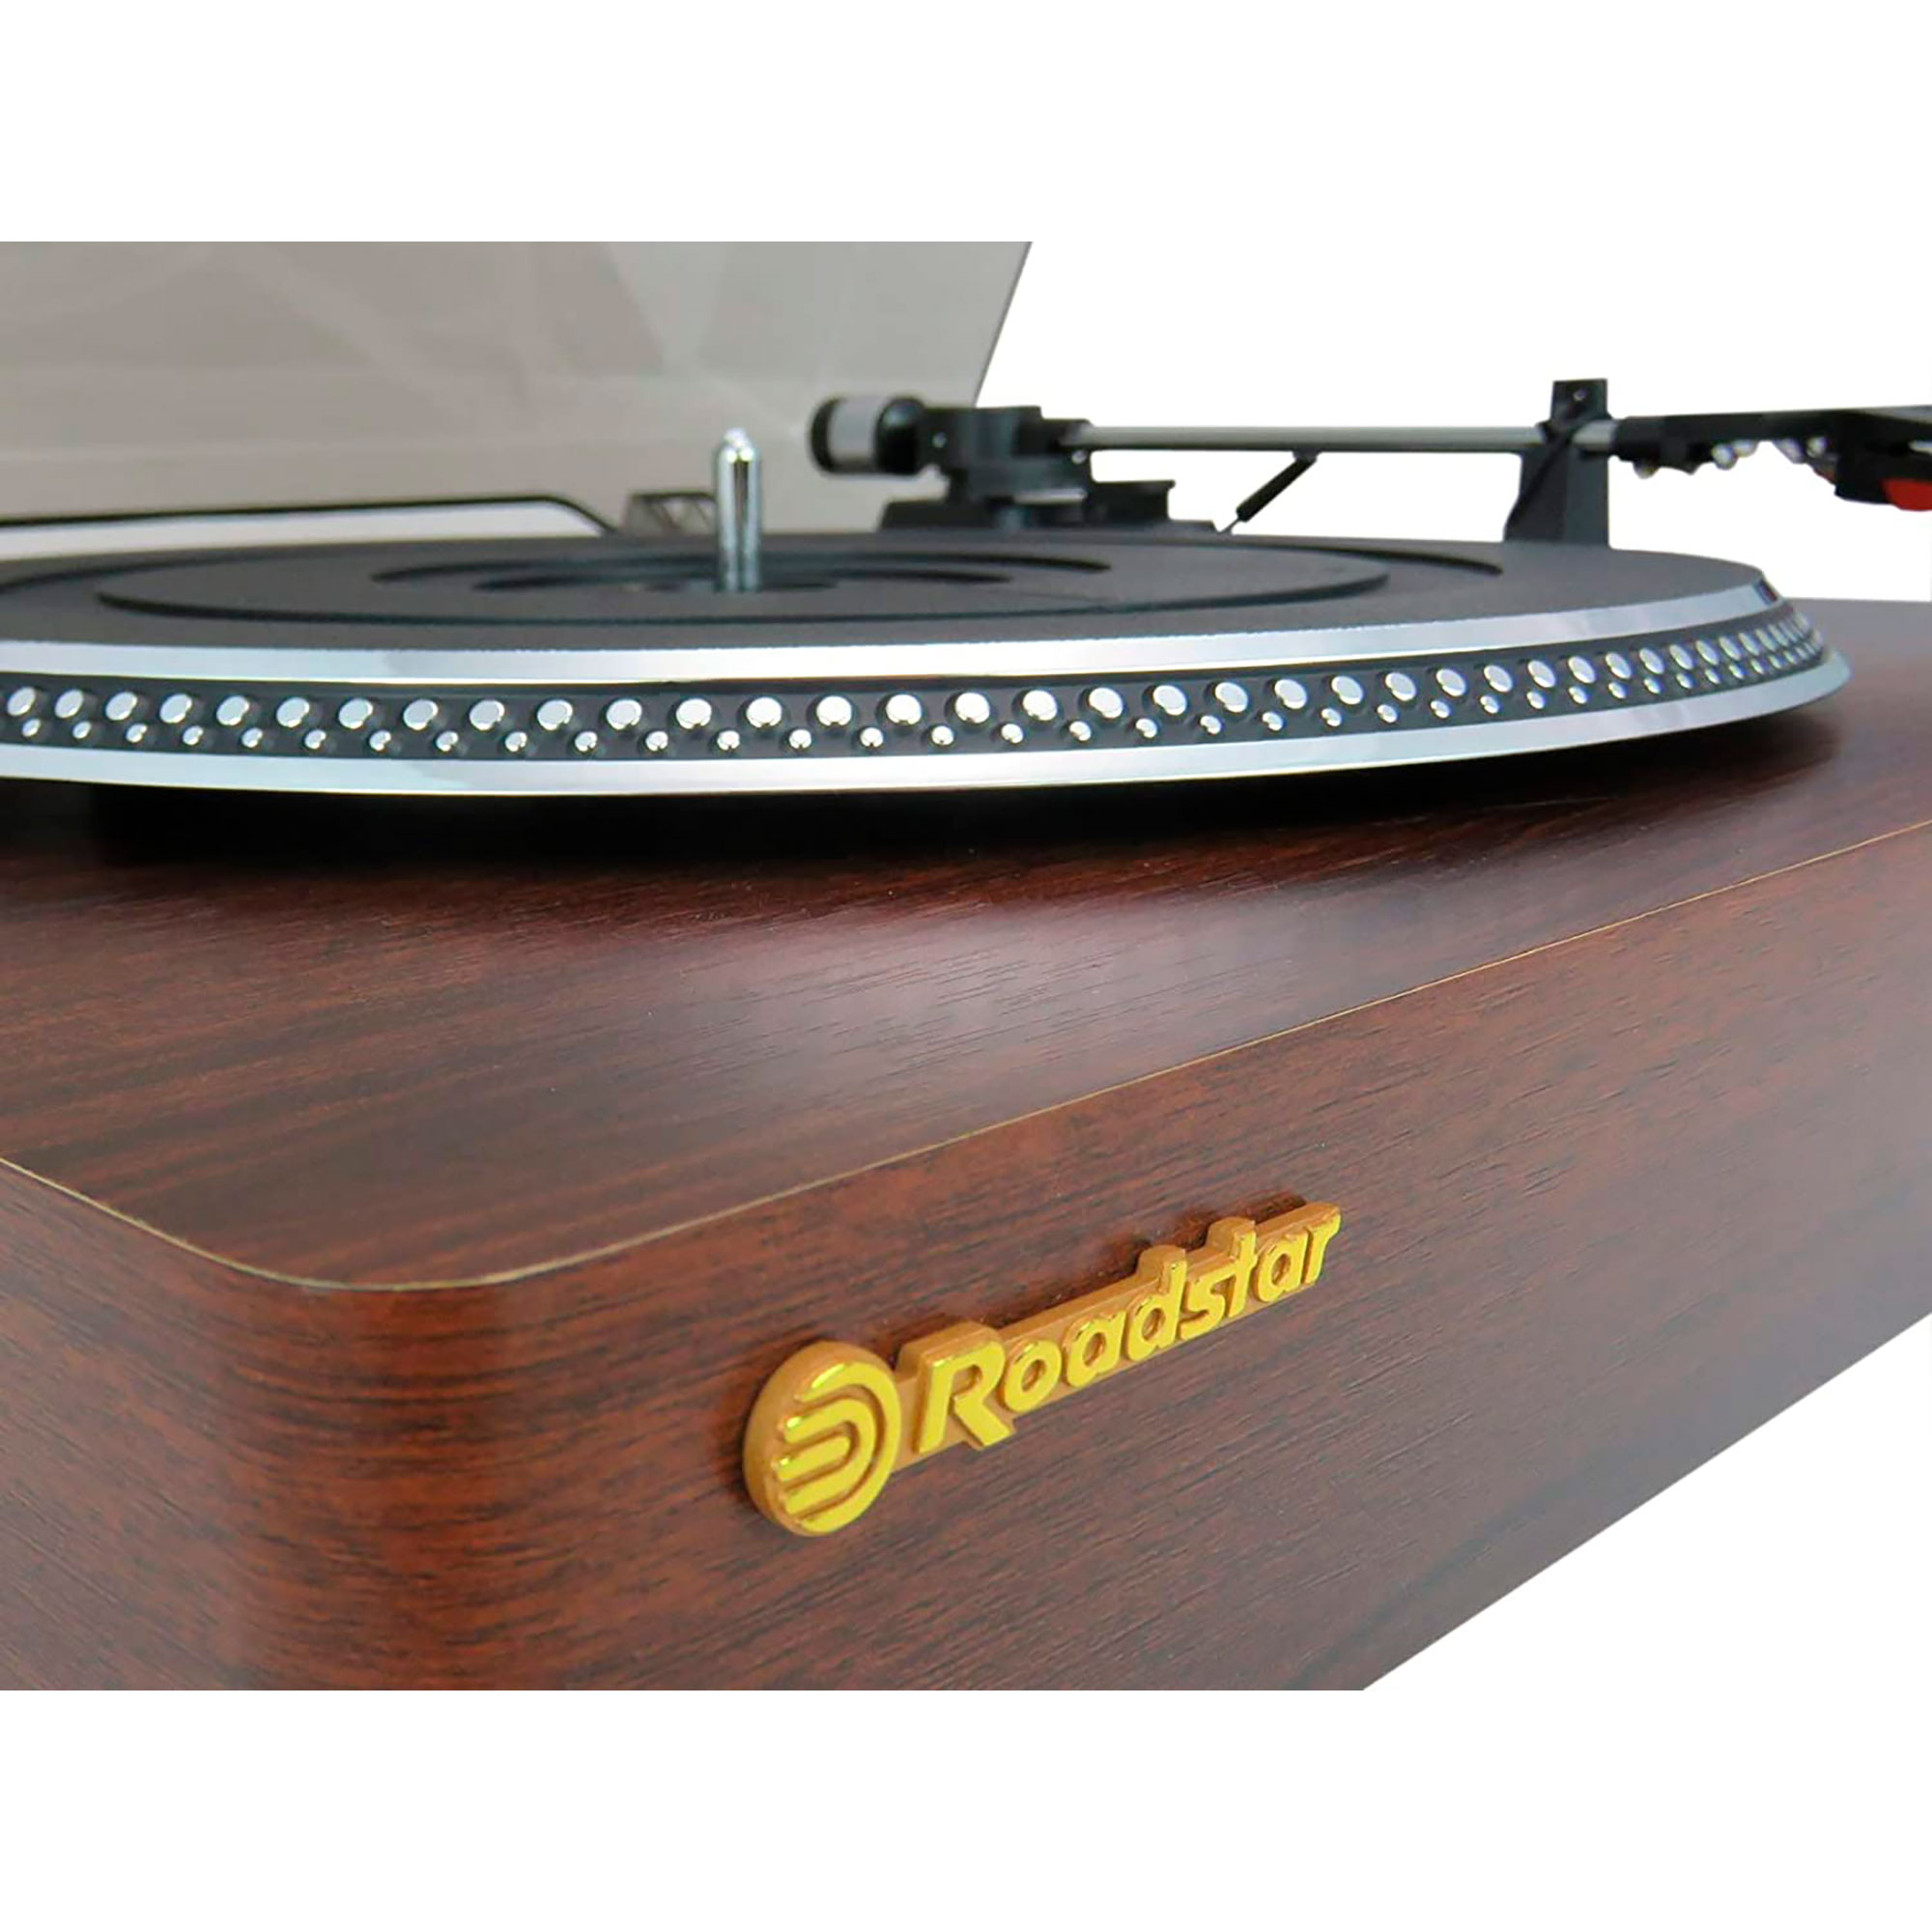 ROADSTAR TT385BTT Holz Vintage Retro Vinyl-Plattenspieler